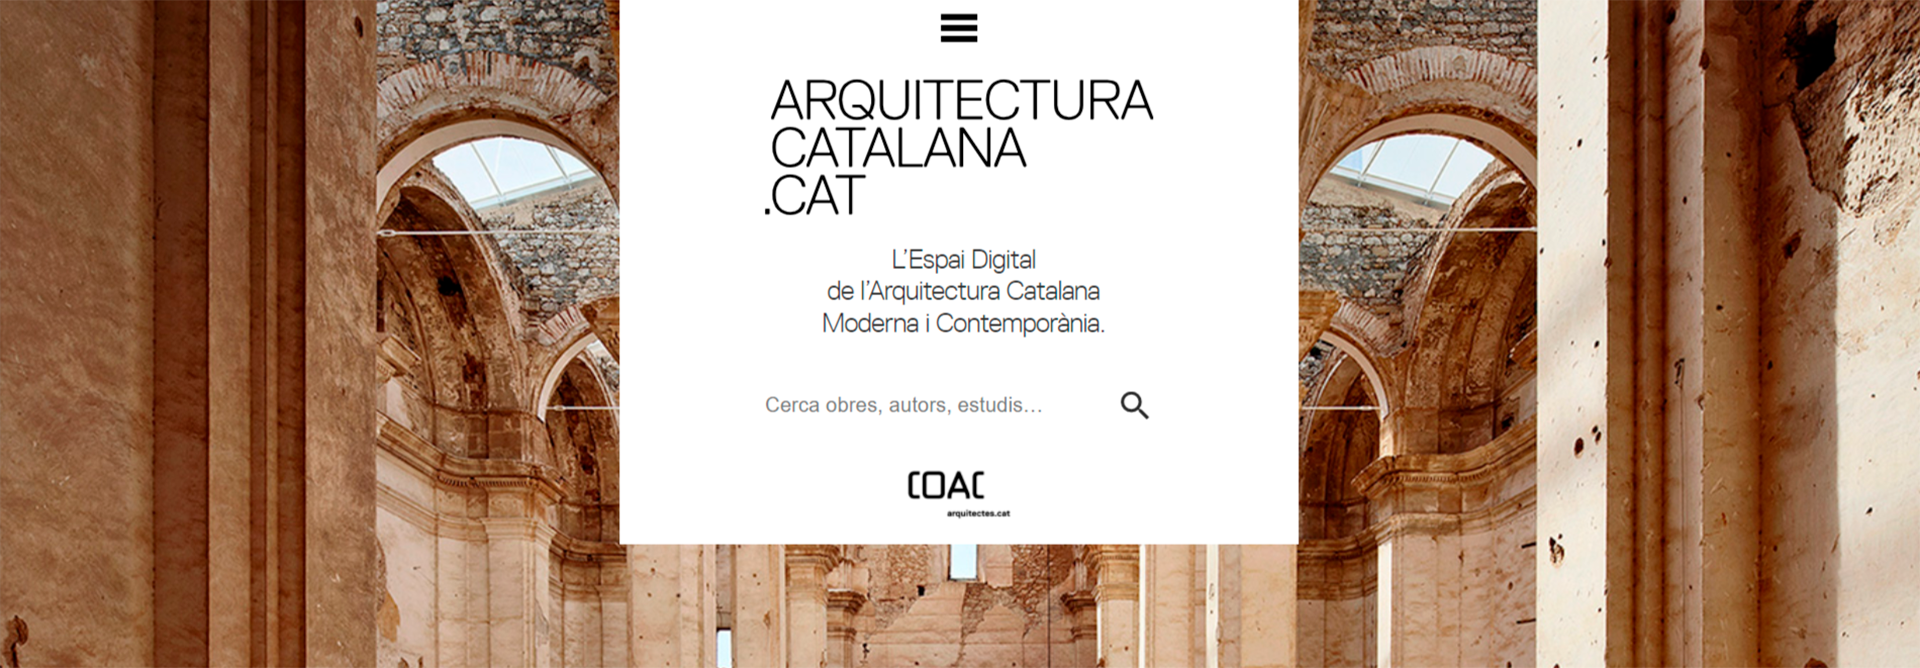 Pantalla d'inici del portal arquitecturacatalana.cat